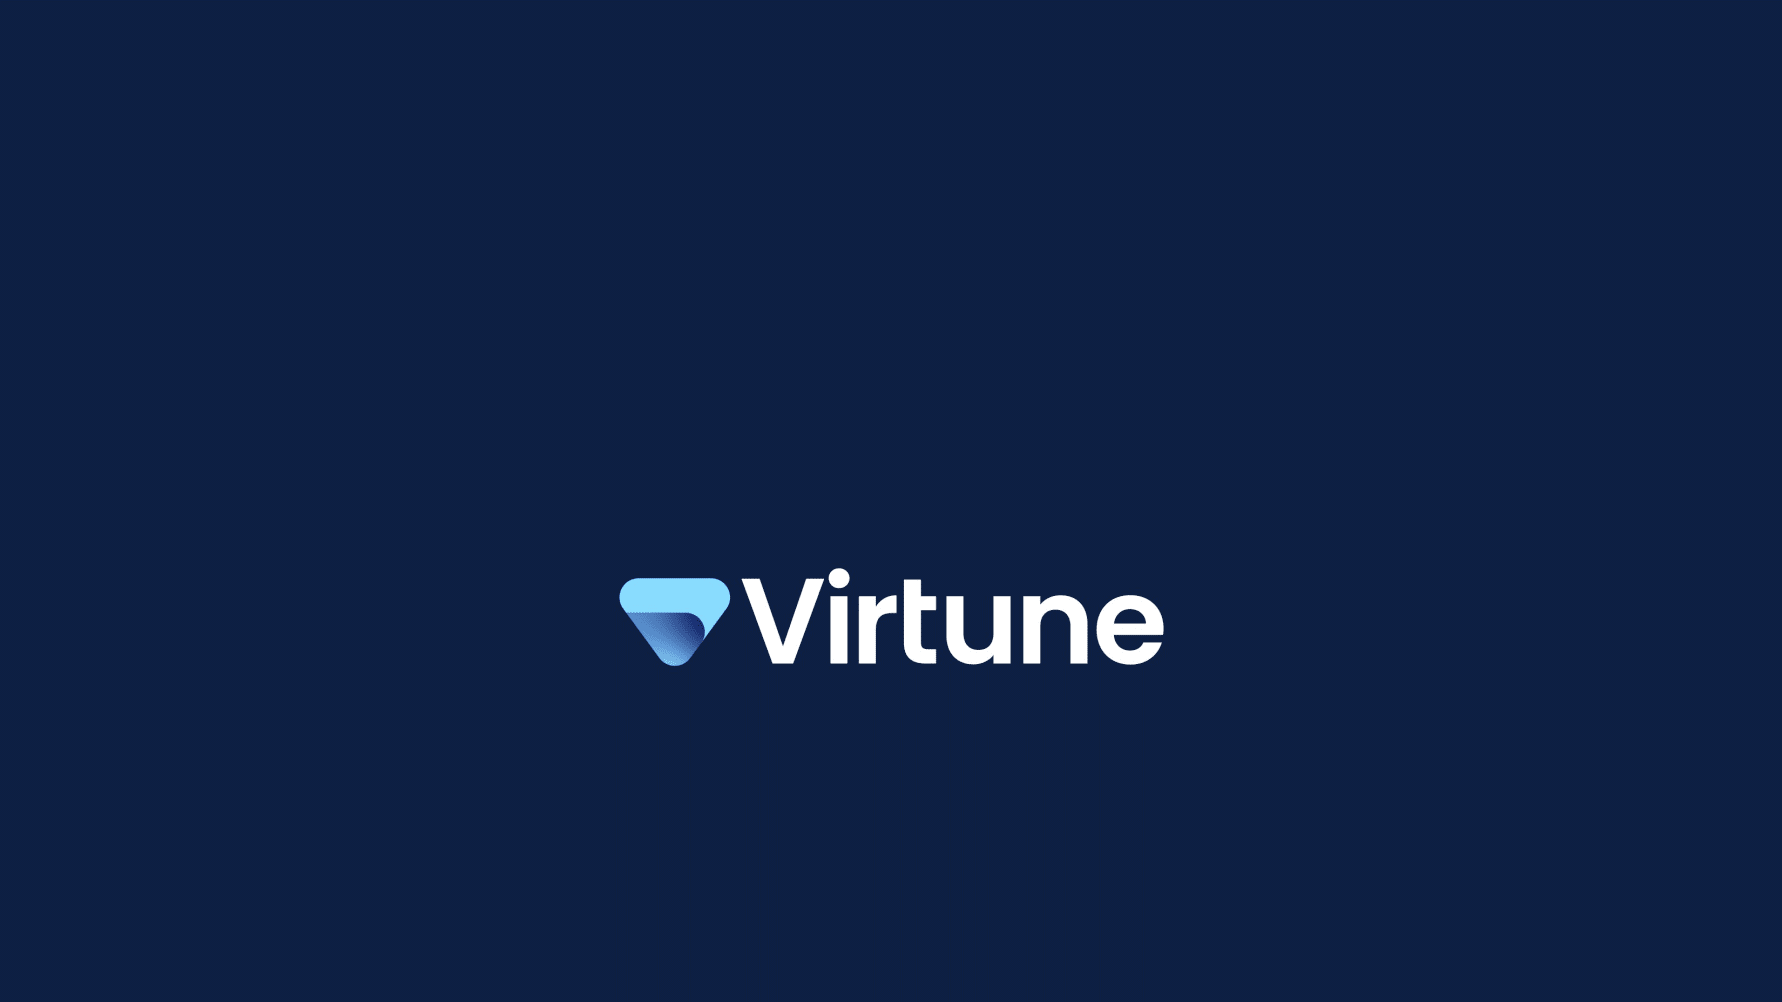 Den svenska digitala kapitalförvaltaren Virtune har fått myndighetsgodkännande att lansera sina första krypto-ETPer i Europa.